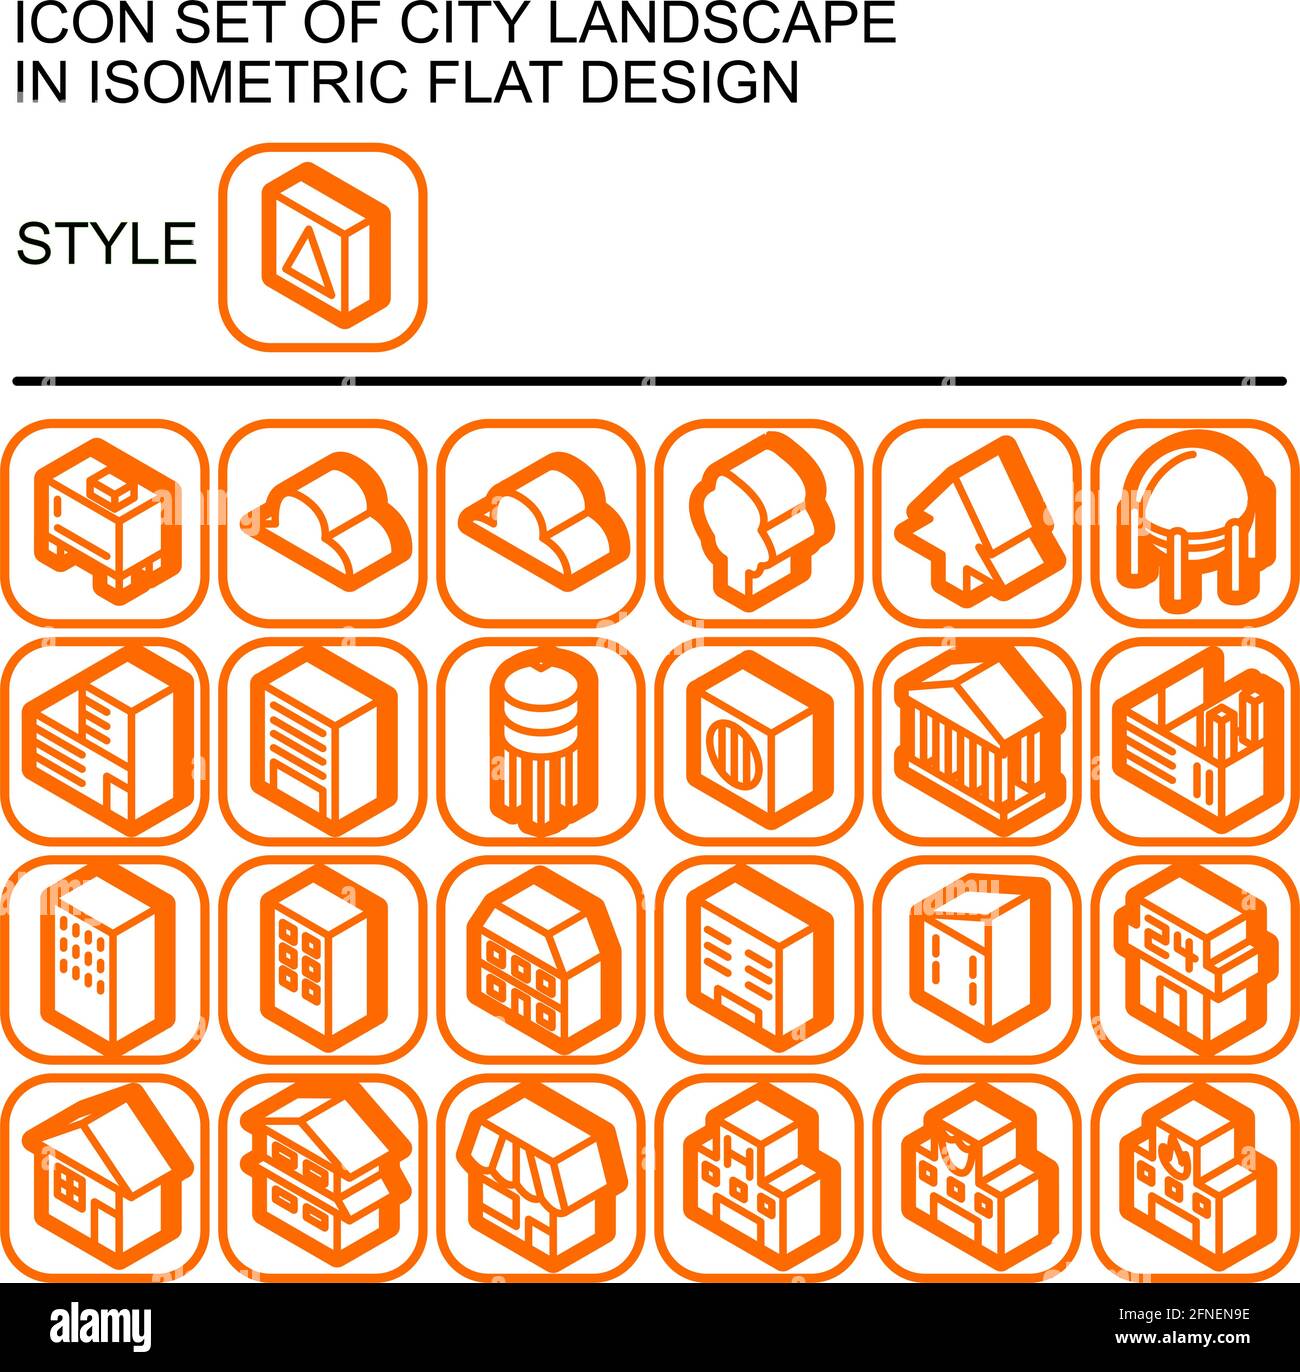 Icona del paesaggio urbano in un design piatto isometrico con linee arancioni, riempimenti bianchi, ombra dell'arancione su un quadrato rotondo di linea arancione e bianco Illustrazione Vettoriale